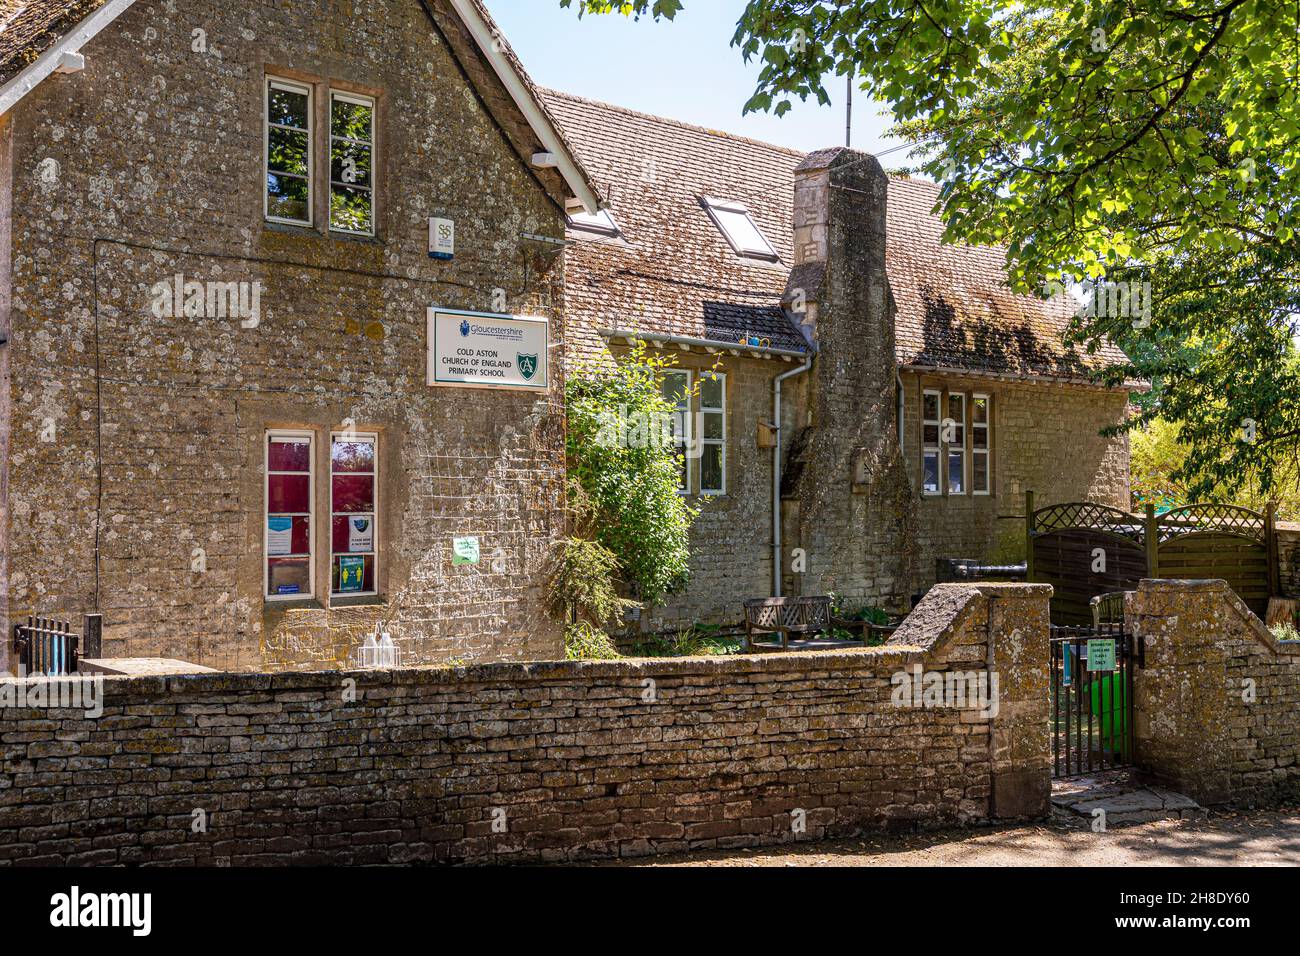 L'école primaire du village de l'Église d'Angleterre dans le village de Cotswold de Cold Aston (alias Aston Blank), Gloucestershire Royaume-Uni Banque D'Images